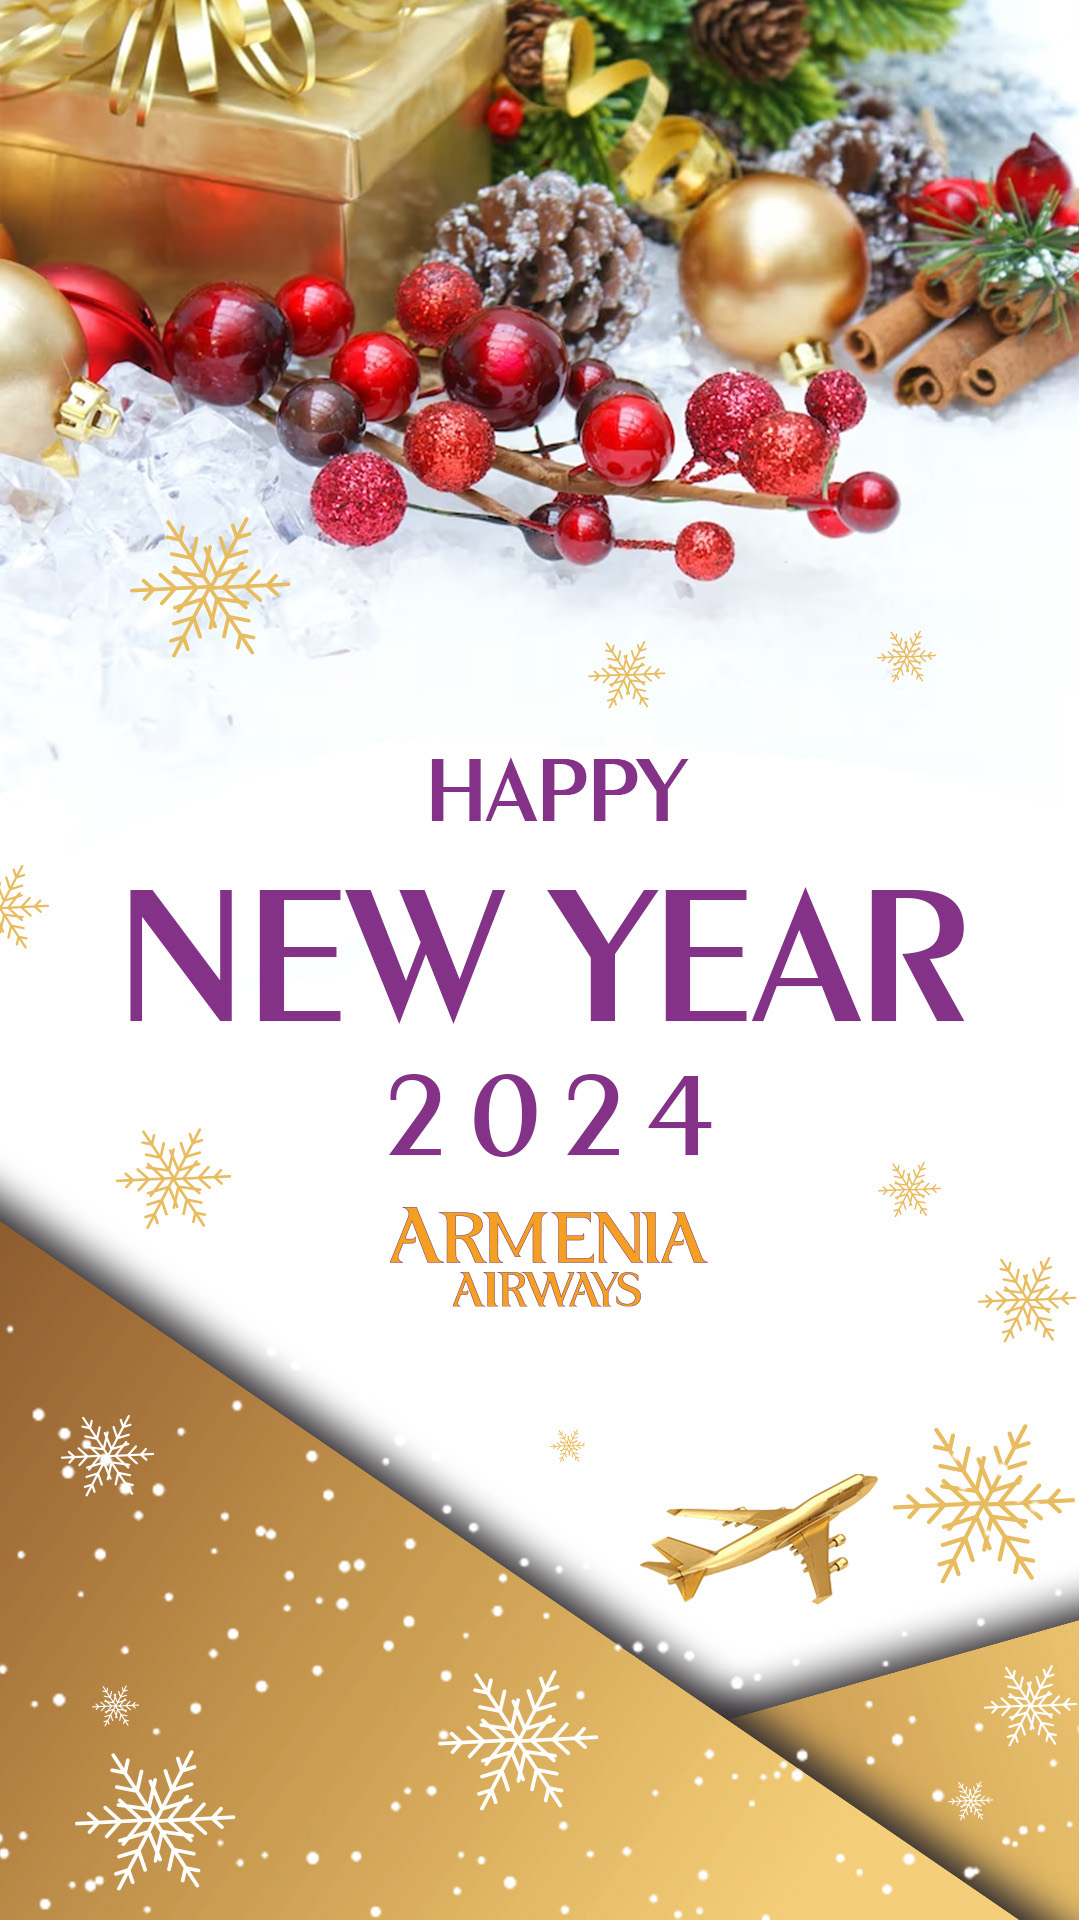 بخشنامه و اطلاعیه   هواپیمایی آرمنیا ایرویز درباره تبریک سال نو میلادی